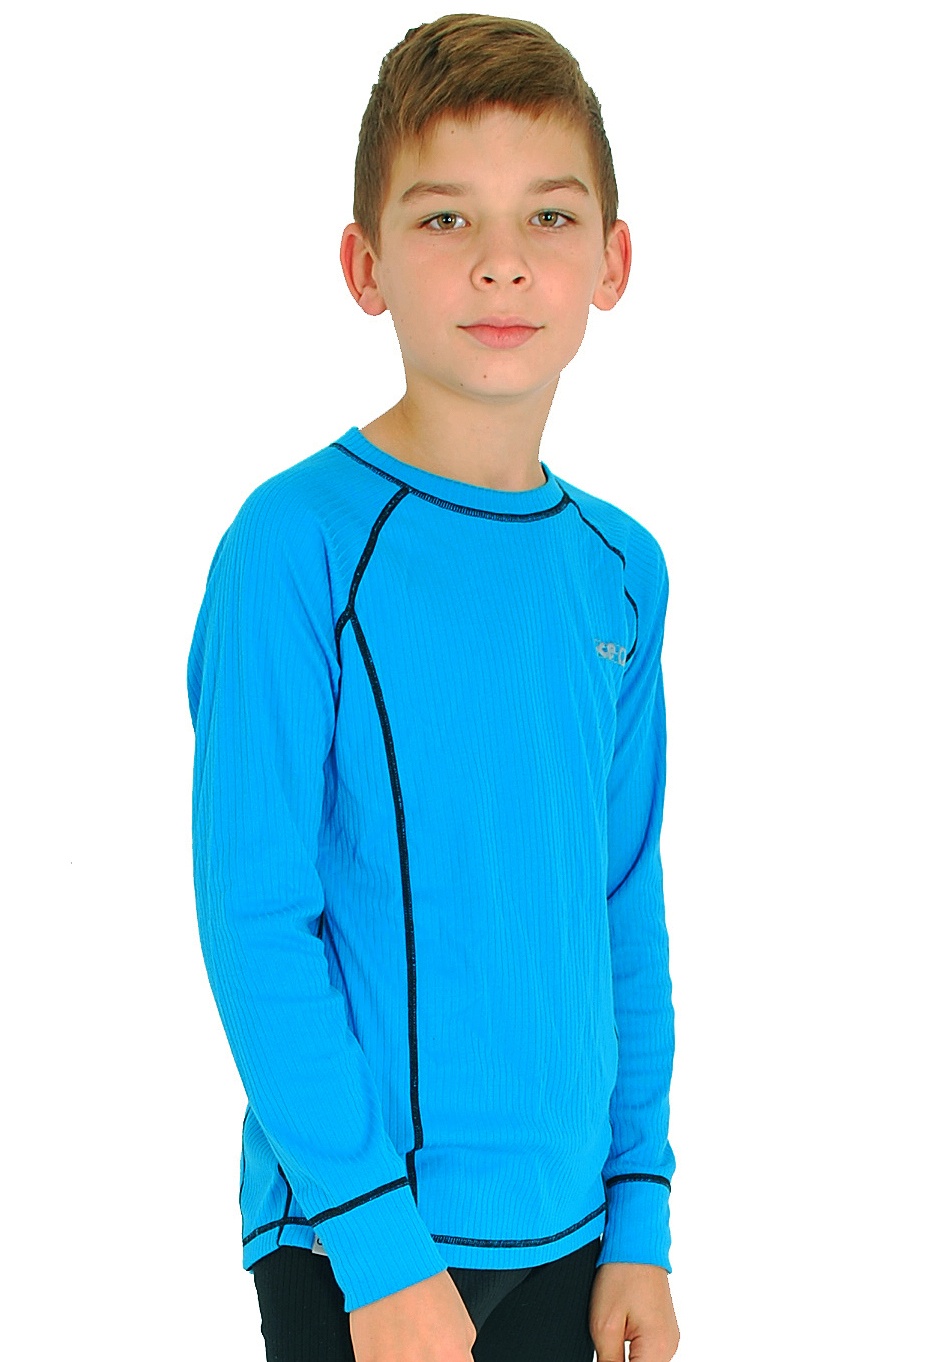 Juniorska koszulka termoaktywna Ice-Q Smart Kid Blue